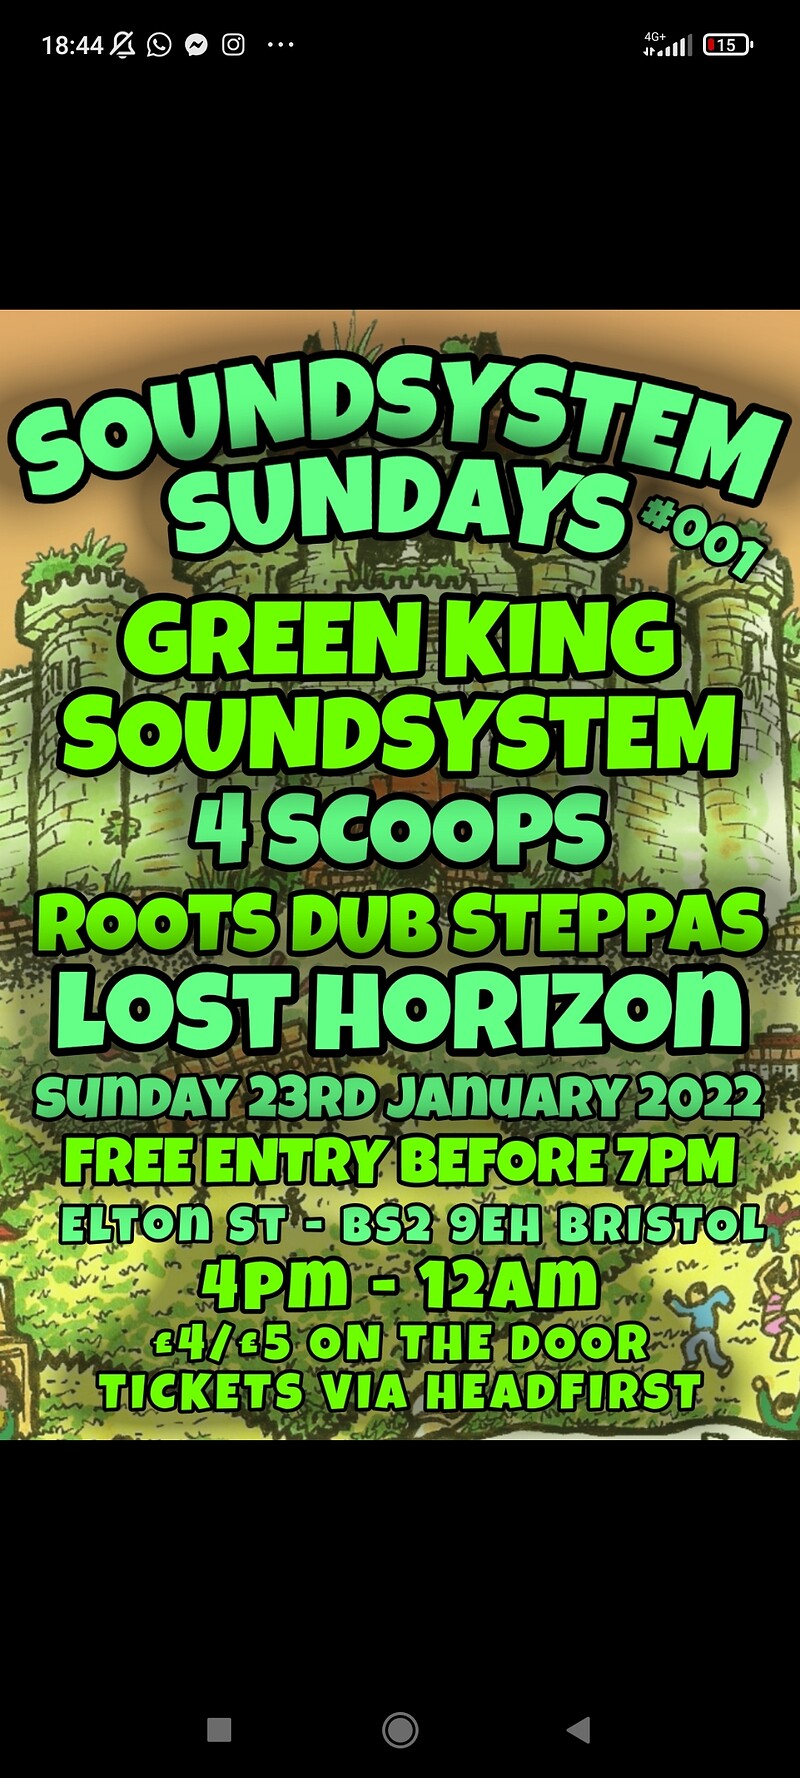 SOUNDSYSTEM SUNDAYS WITH GREEN KING SOUNDSYSTEM at Lost Horizon